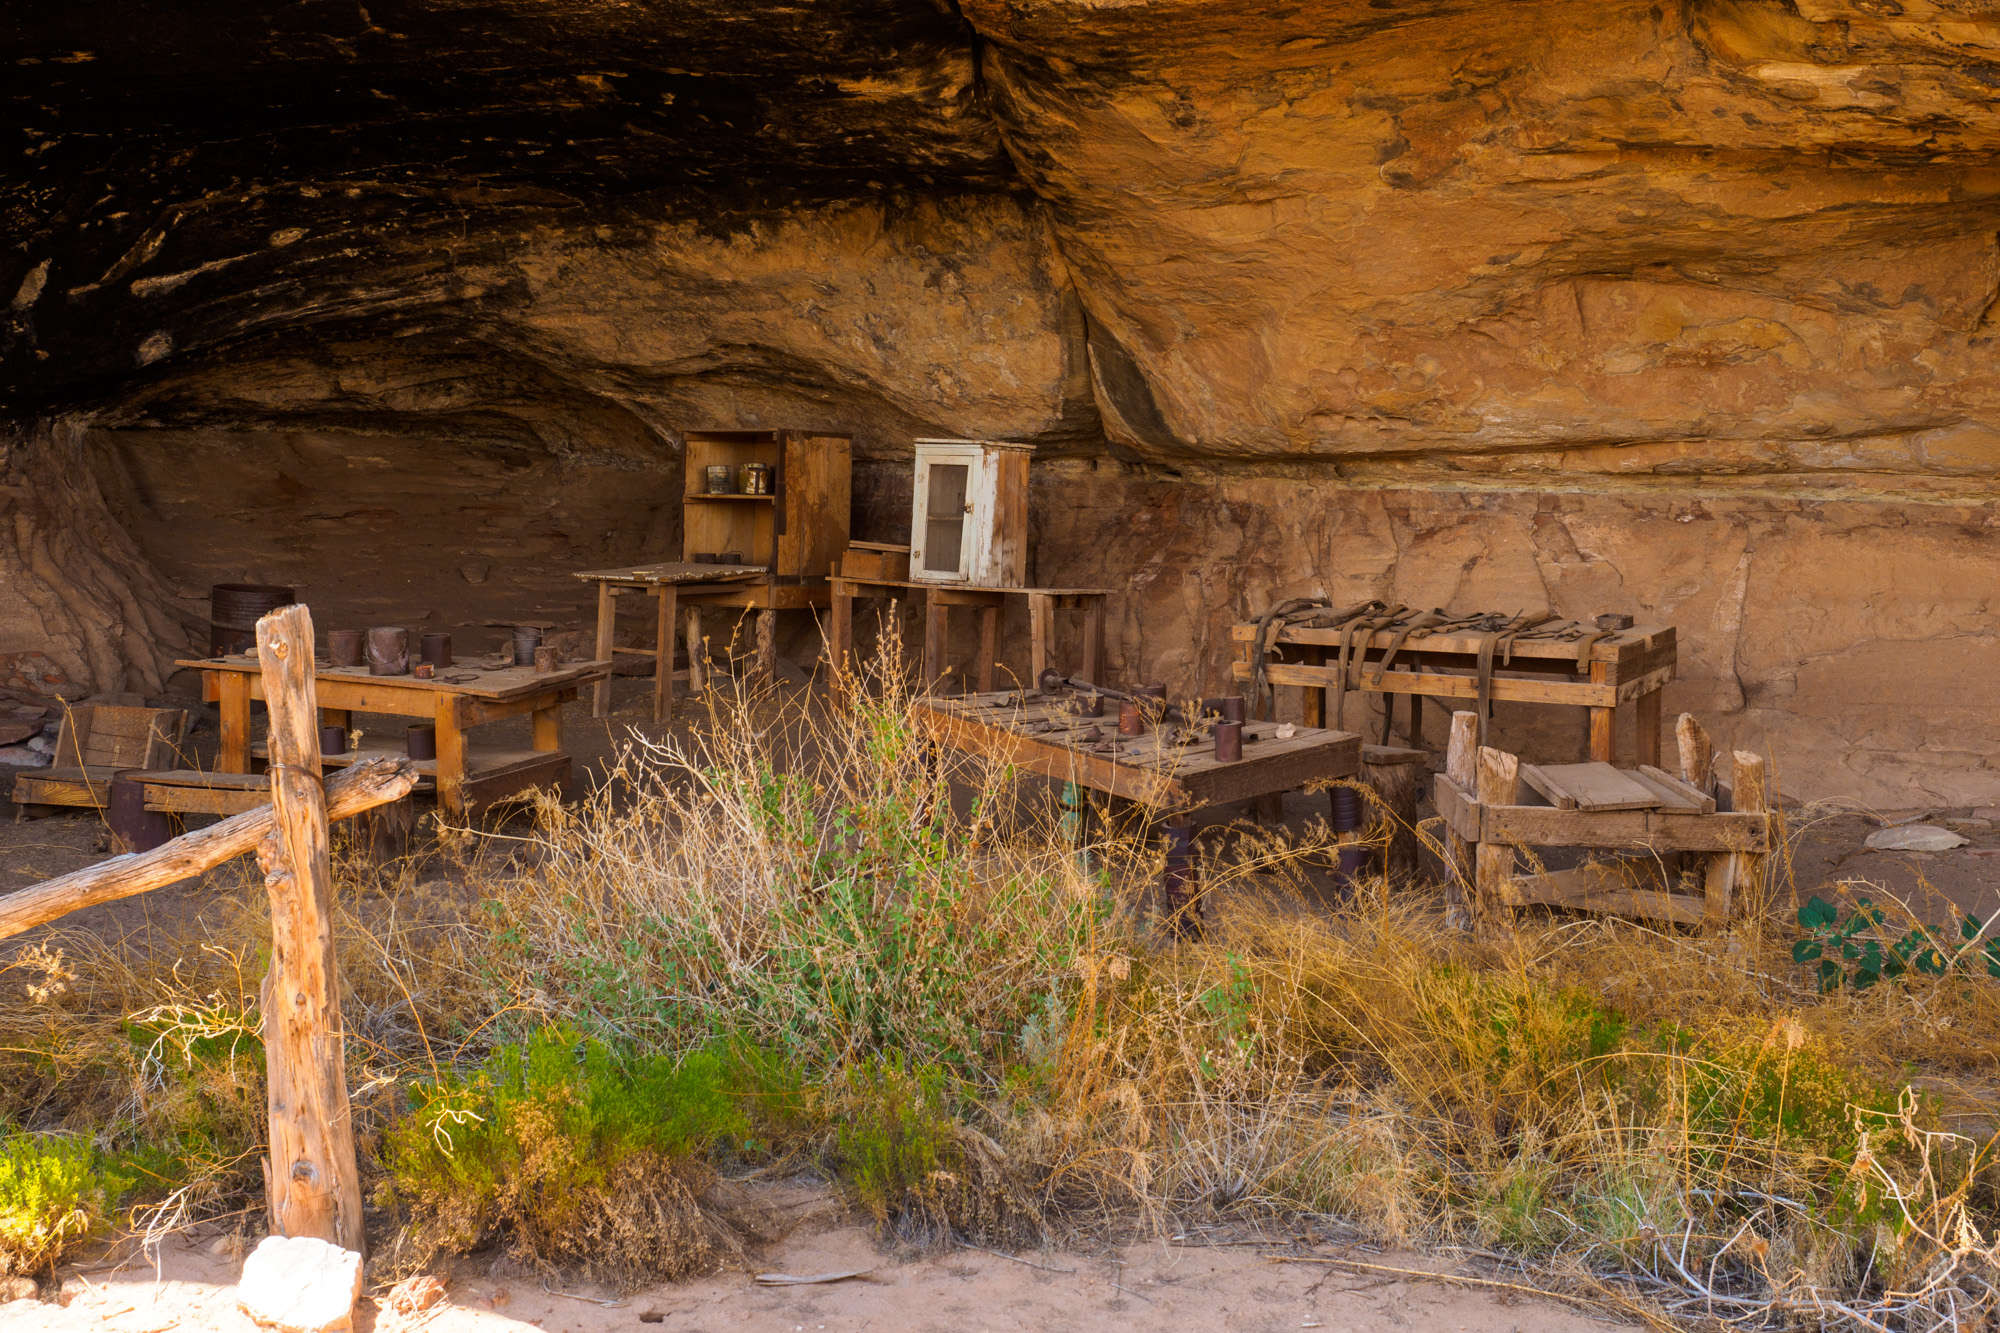 Canyonlands Nationalpark - Cave Spring - ehemalige Behausung von Goldgräbern und Siedlern unter einem Felsvorsprung